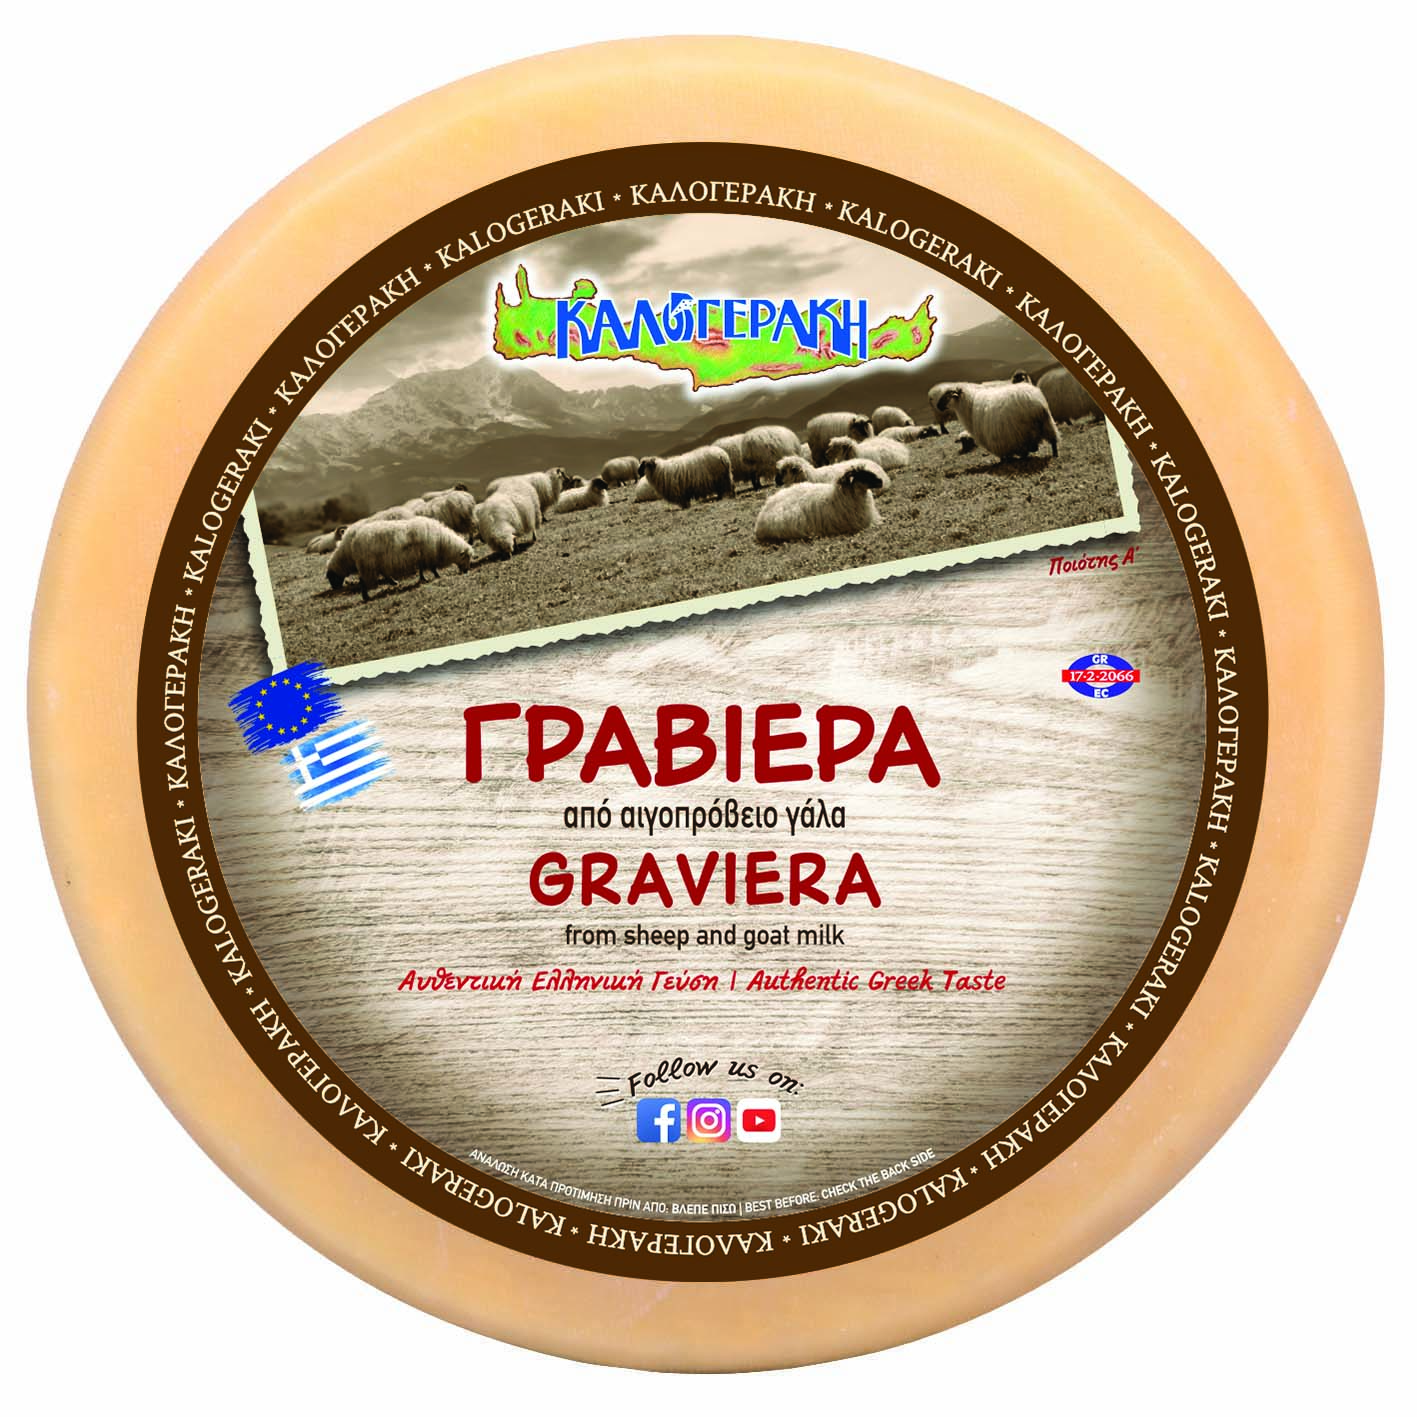 Graviera & Cretan Graviera PDO